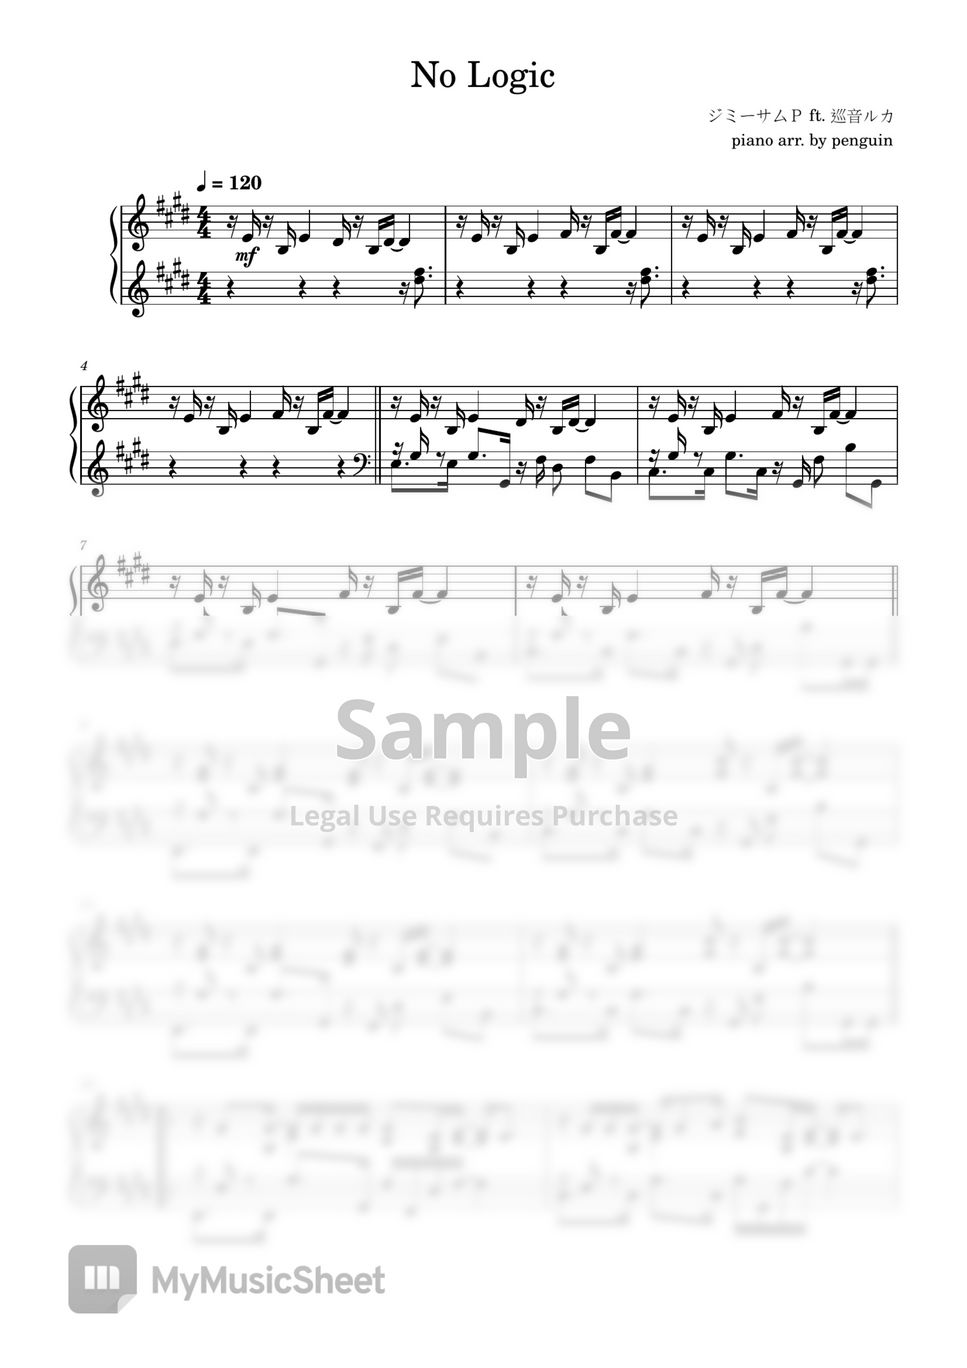 JimmyThumb-P - No Logic by penguin's piano